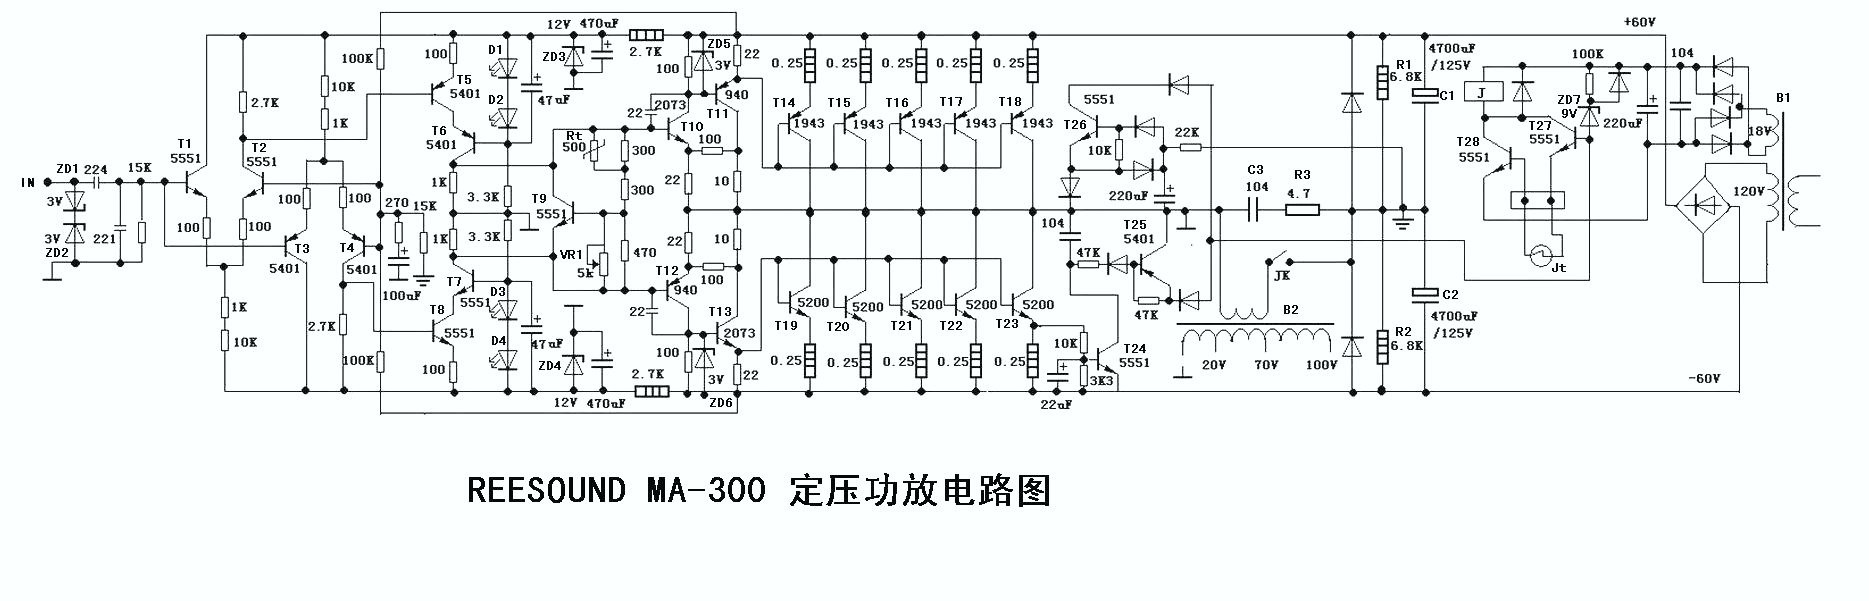 Sharp ljudet av konstant tryck REESOUND MA-300 slutsteg schematisk